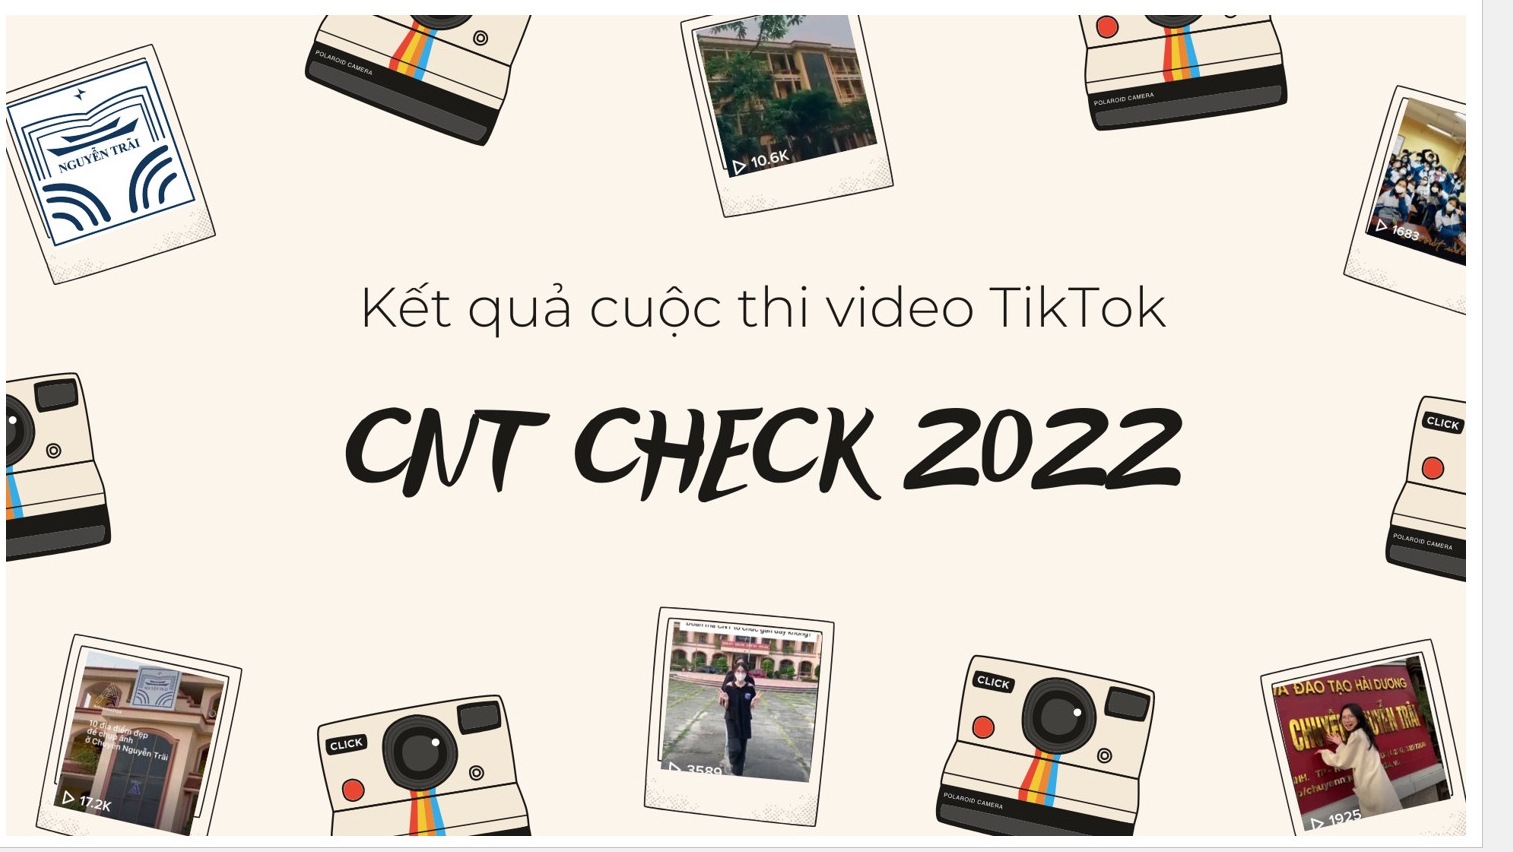 Công bố kết quả cuộc thi video TikTok "CNT check" 2022